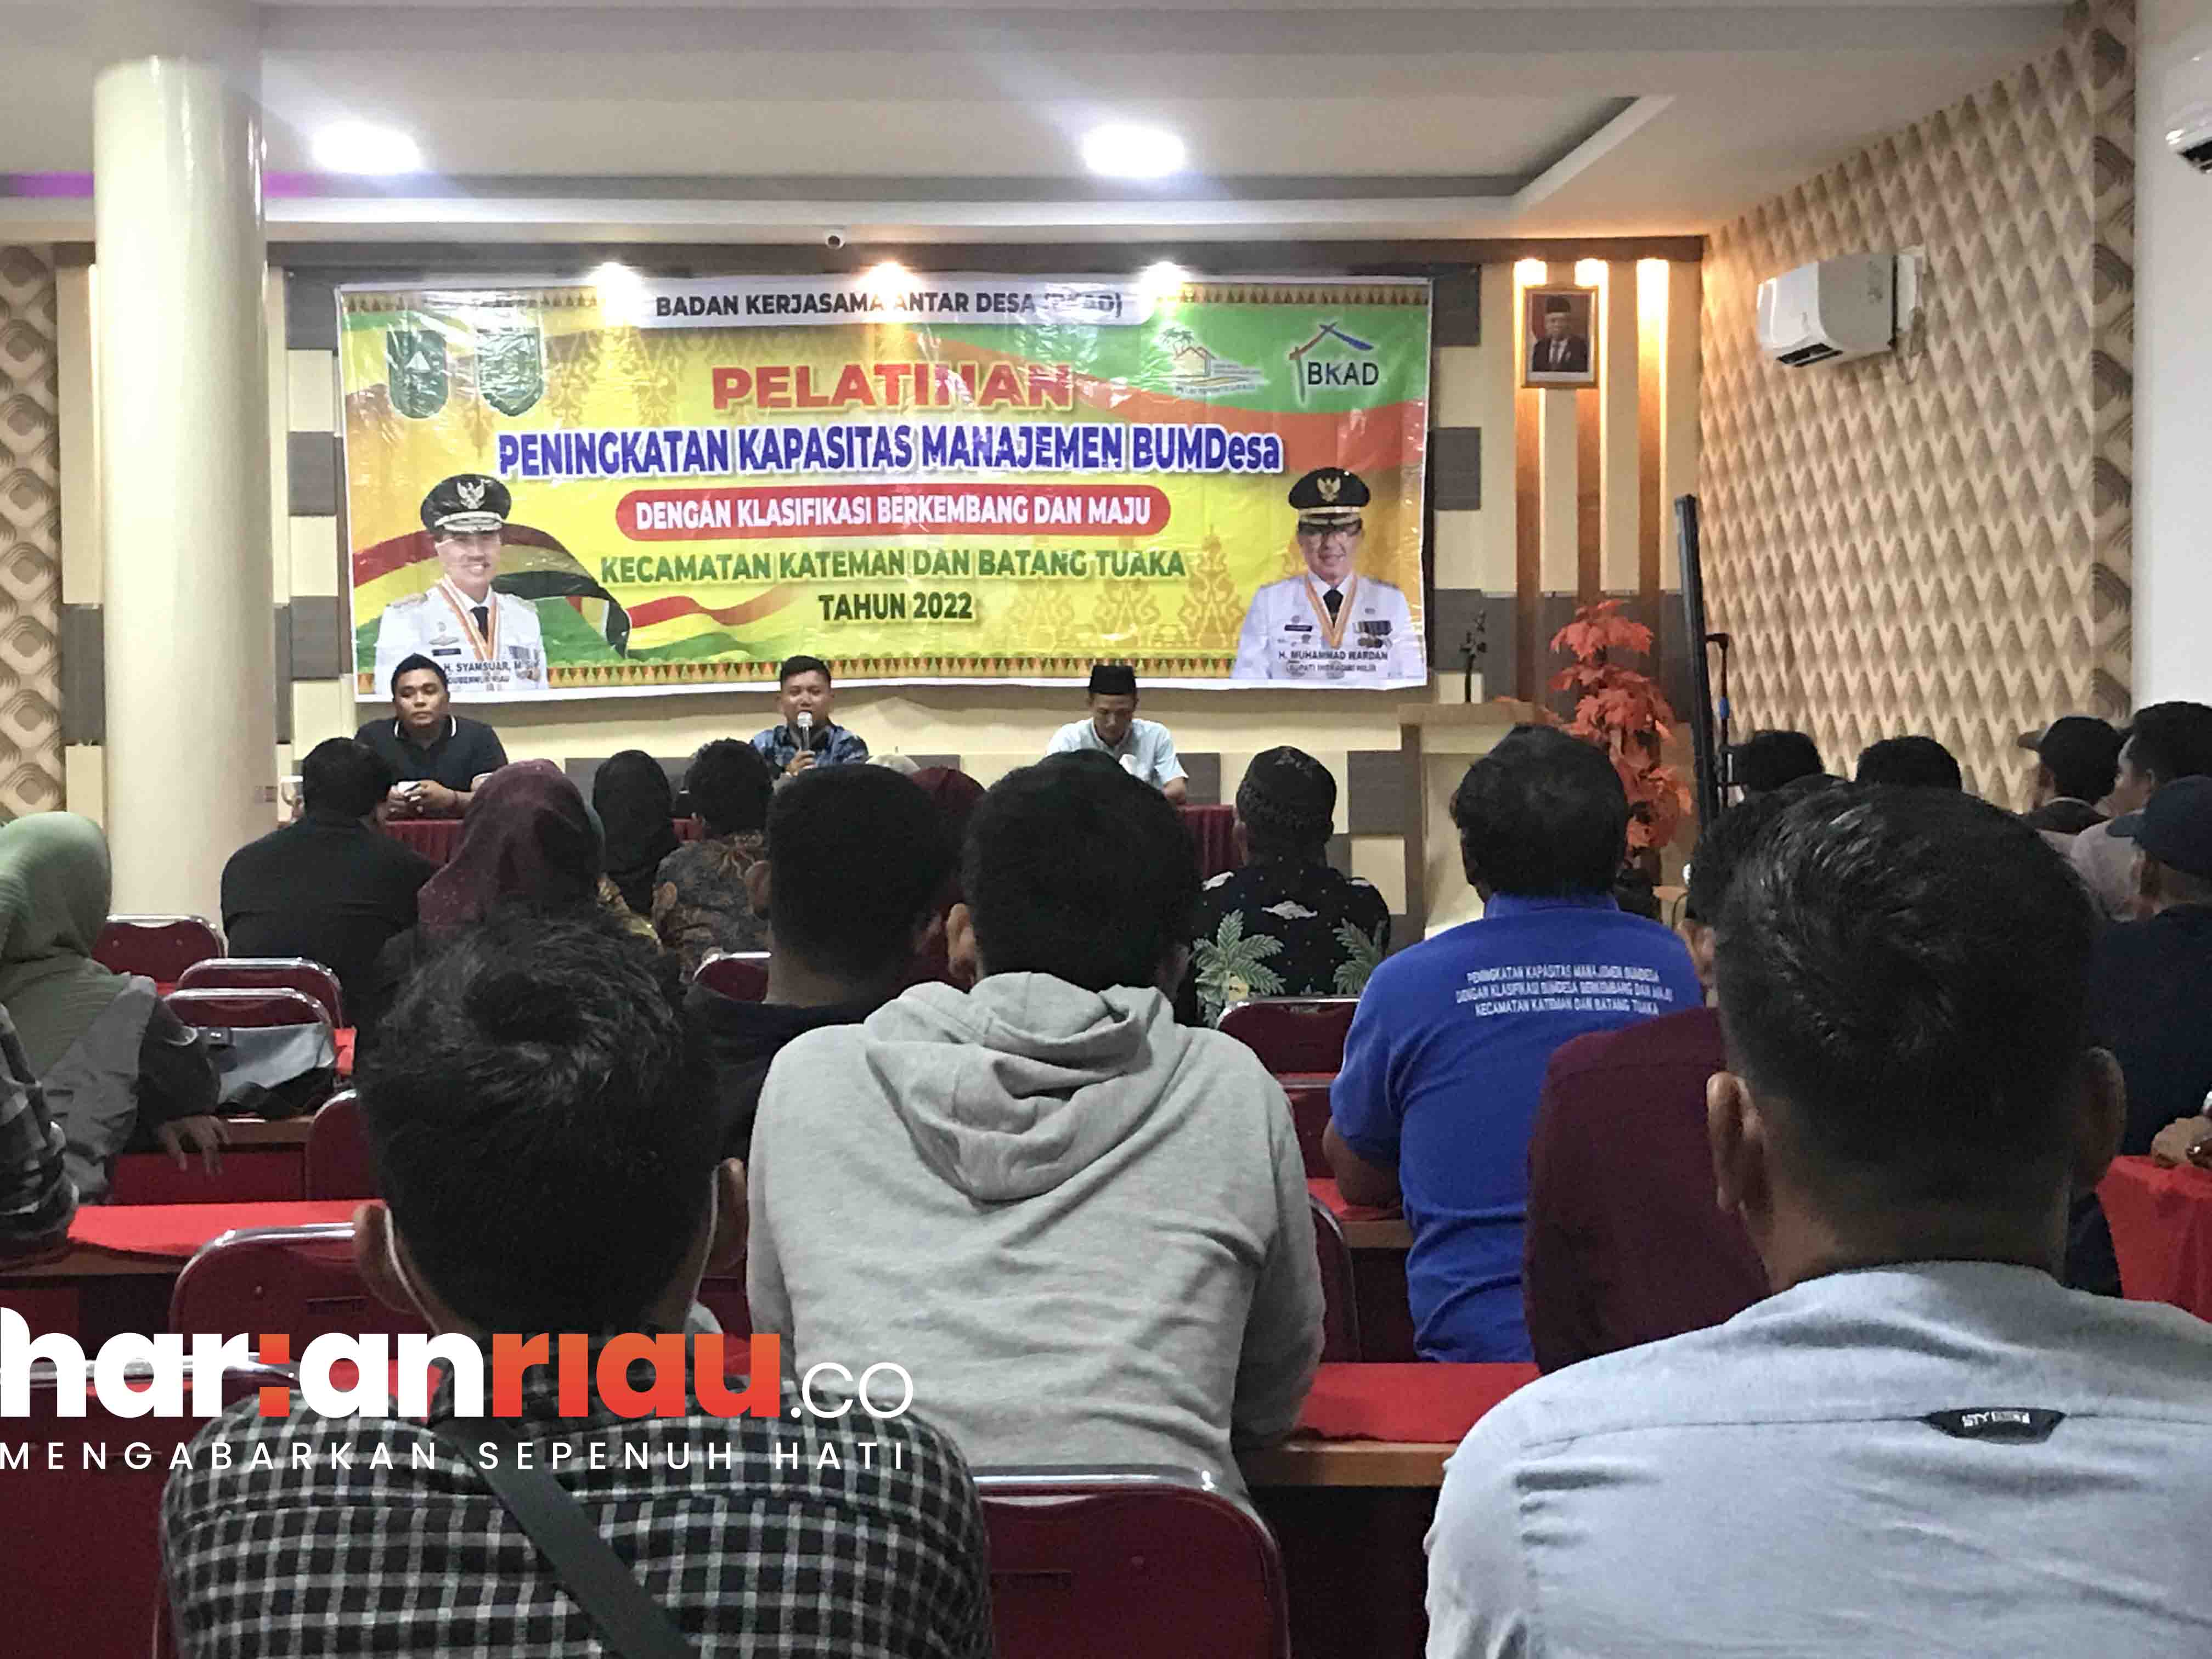 Pelatihan Peningkatan Kapasitas Manajemen BUMDesa Kecamatan Kateman dan Batang Tuaka resmi ditutup